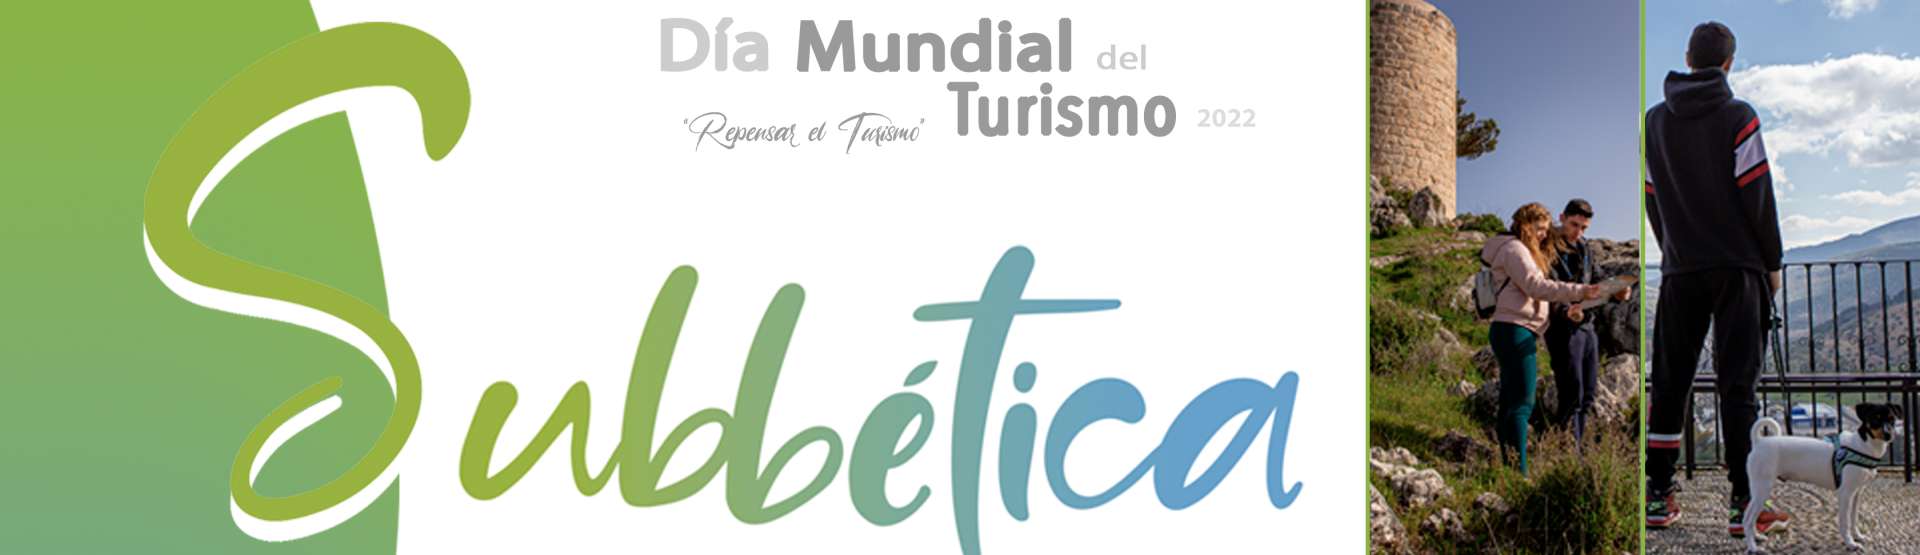 27s Día Mundial del Turismo 2022, "Repensar el Turismo"